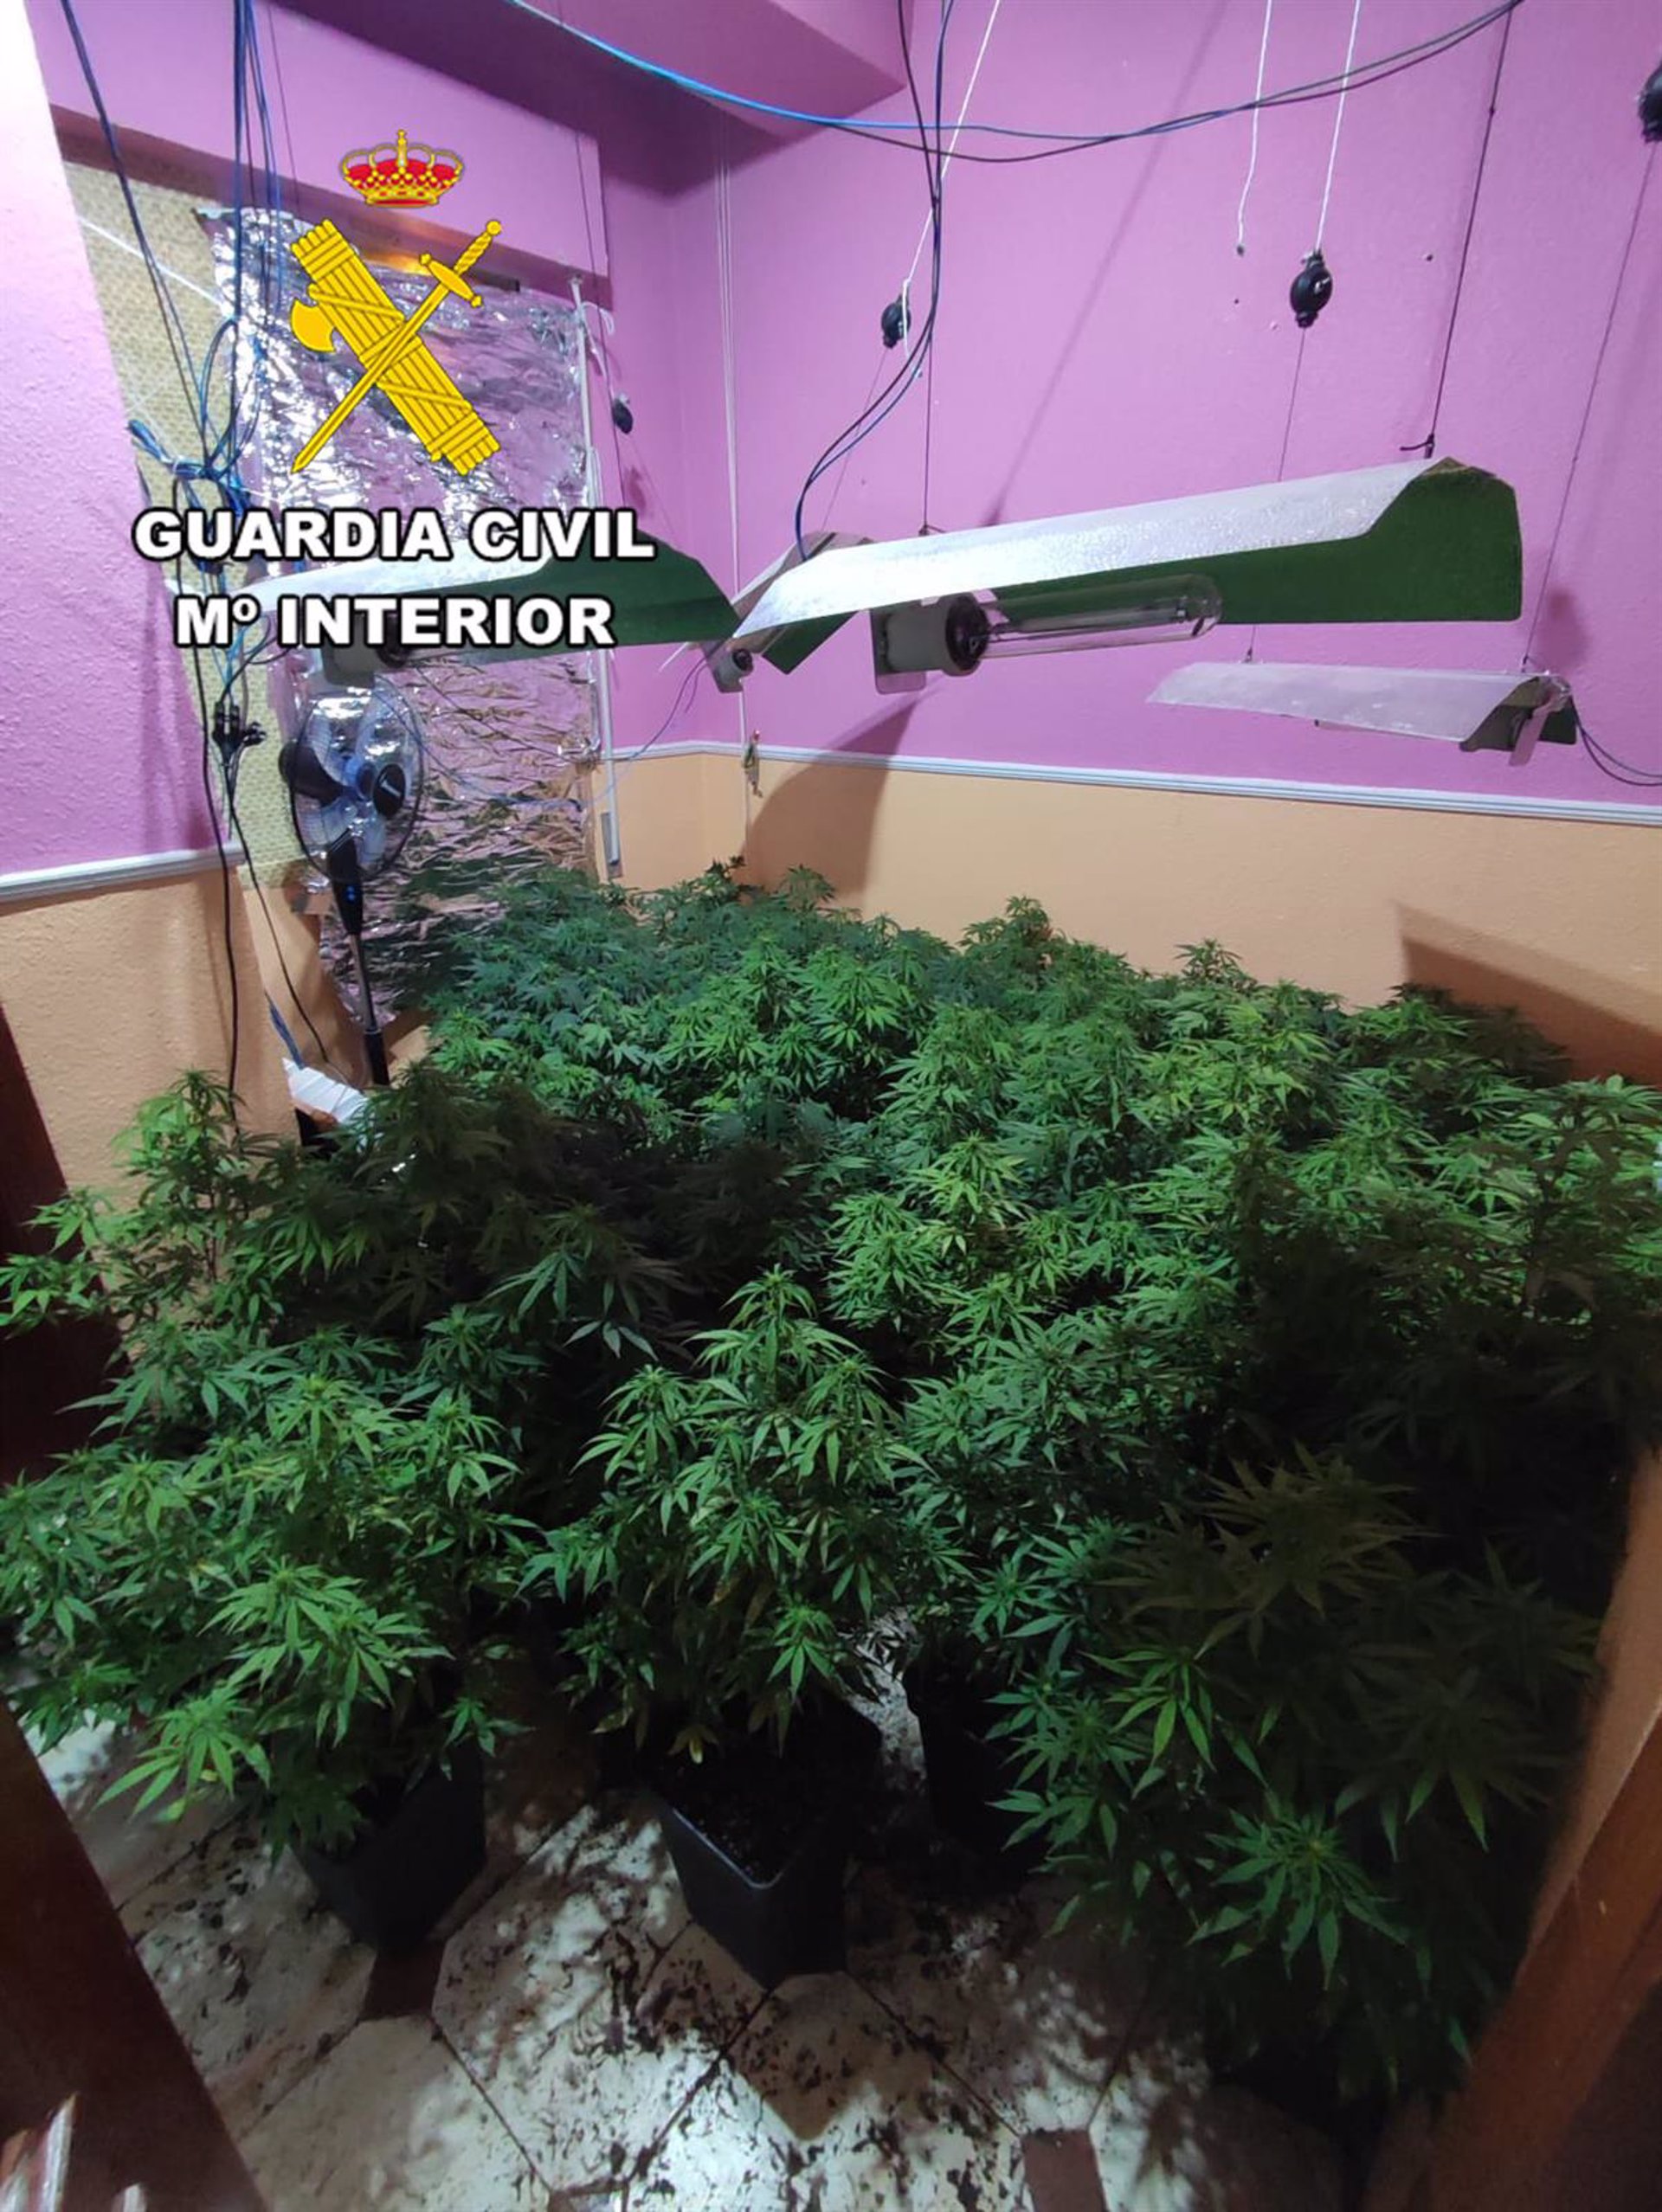 Dos detenidos en Torredelcampo acusados de gestionar una plantación de marihuana en una vivienda